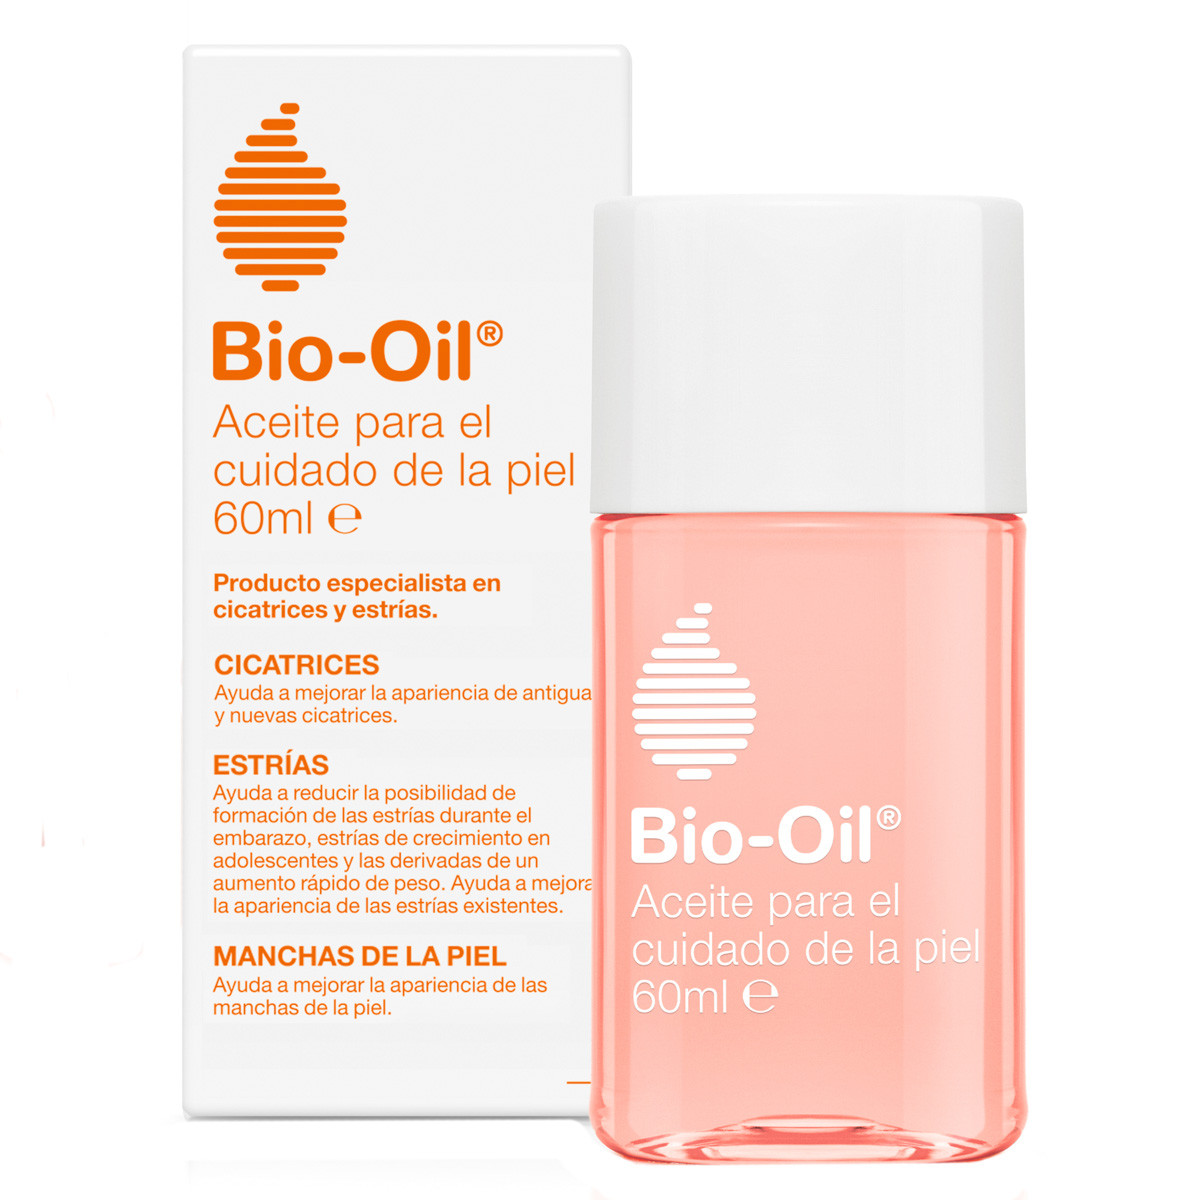 Imagen de Bio-Oil cuidado de la piel 60ml